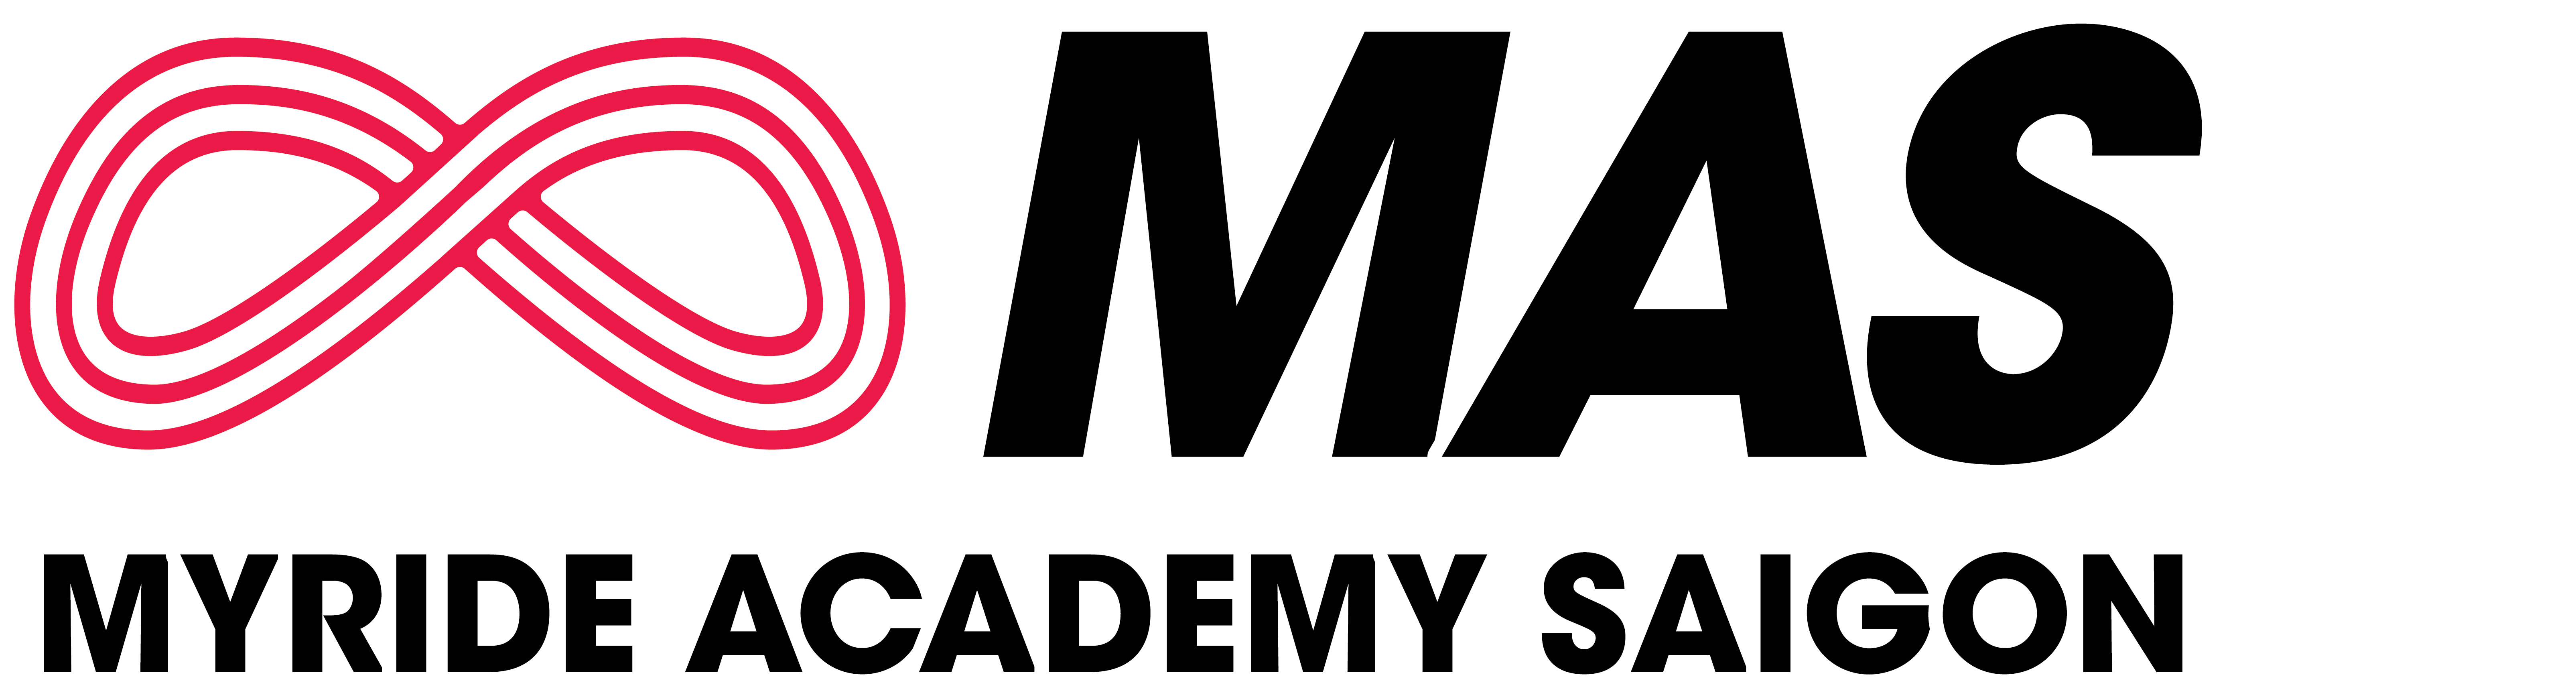 Myride Academy Saigon - MAS